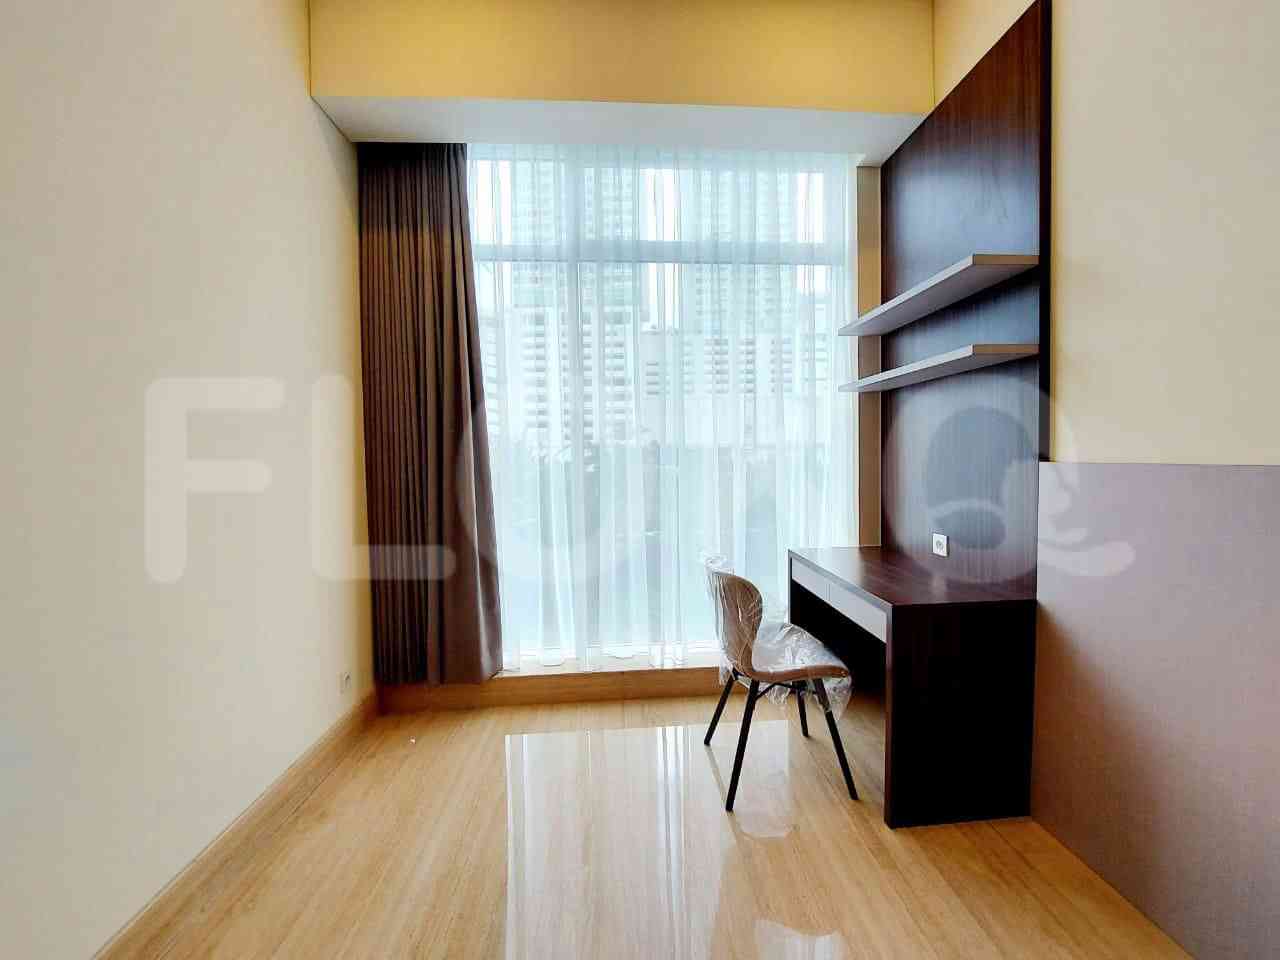 Tipe 2 Kamar Tidur di Lantai 17 untuk disewakan di South Hills Apartemen - fkue54 1